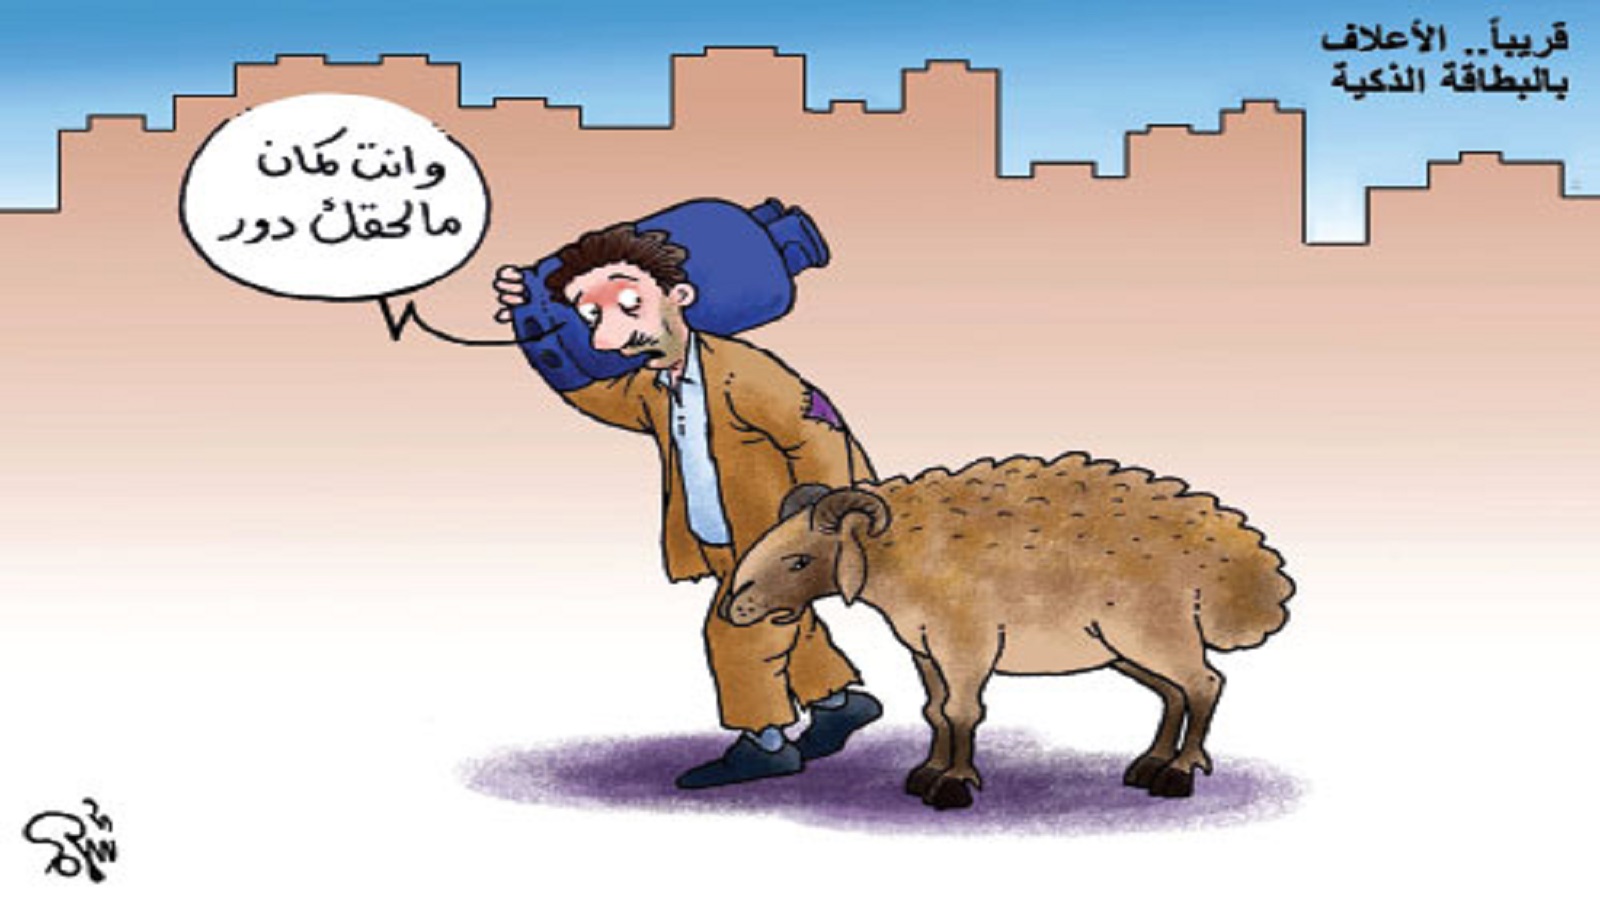 الكاريكاتير في "سوريا الأسد": المضحك المبكي لأسباب غير فنية